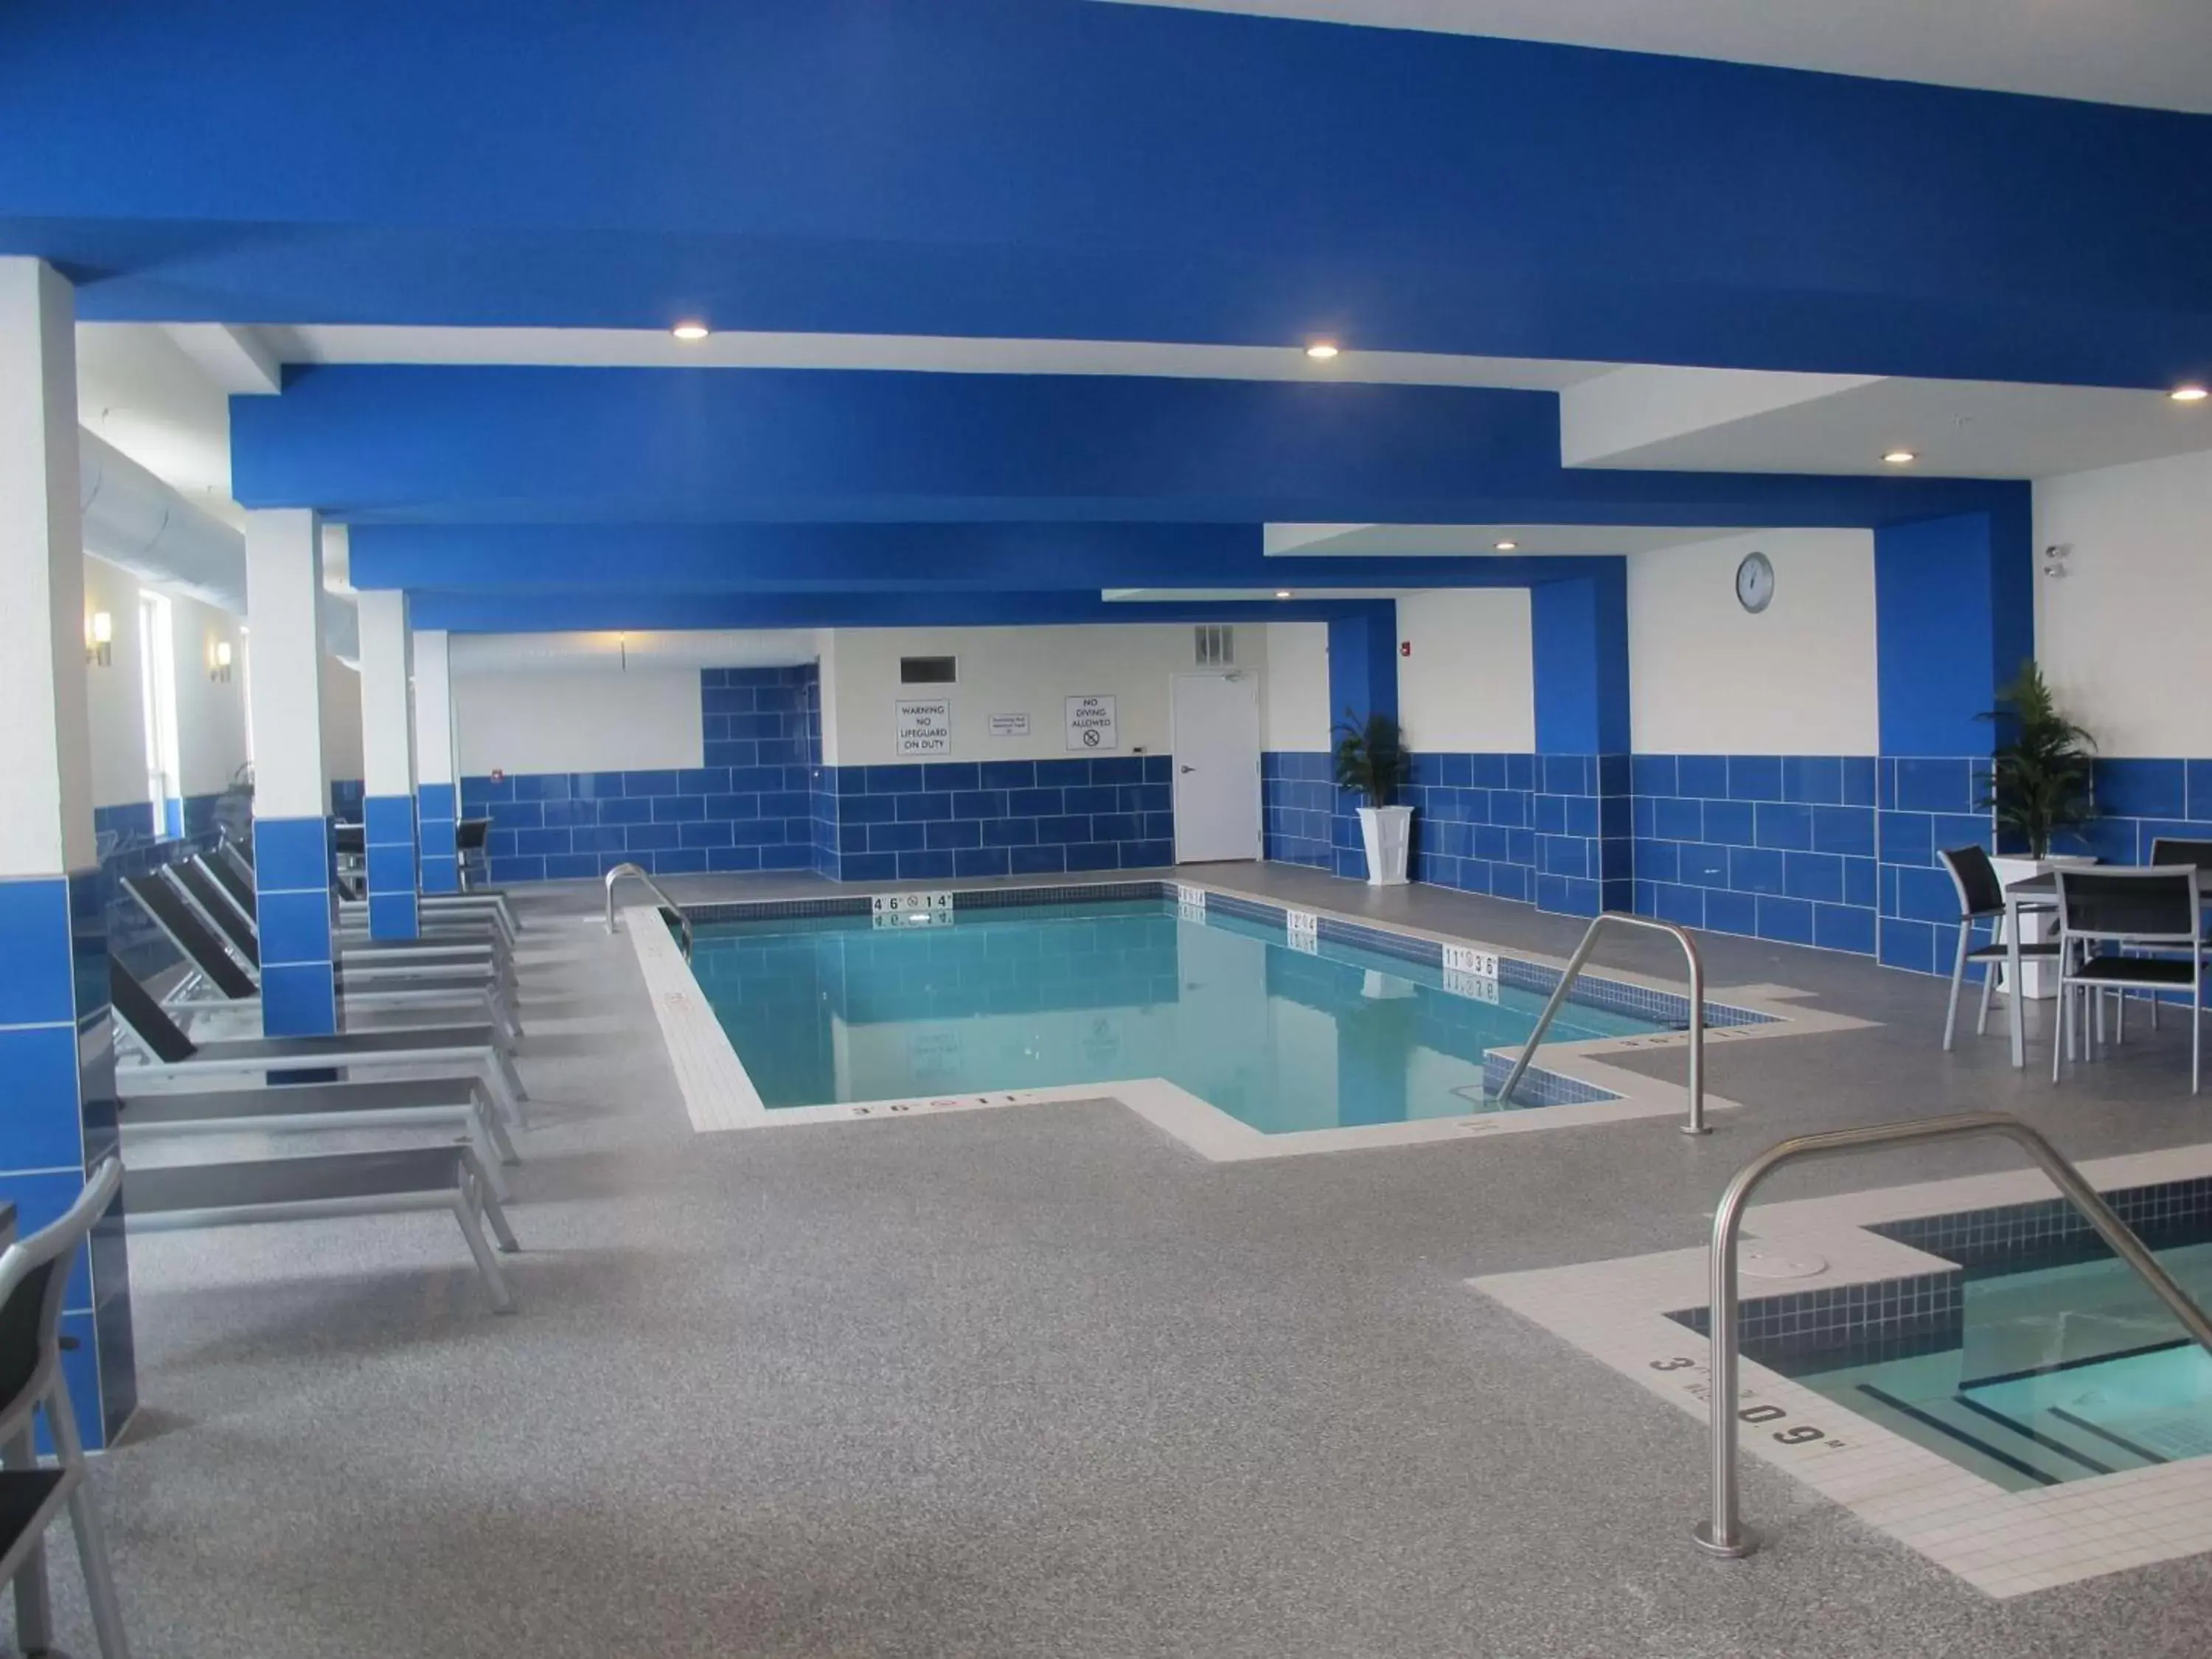 On site, Swimming Pool in Best Western Plus Kindersley Hotel